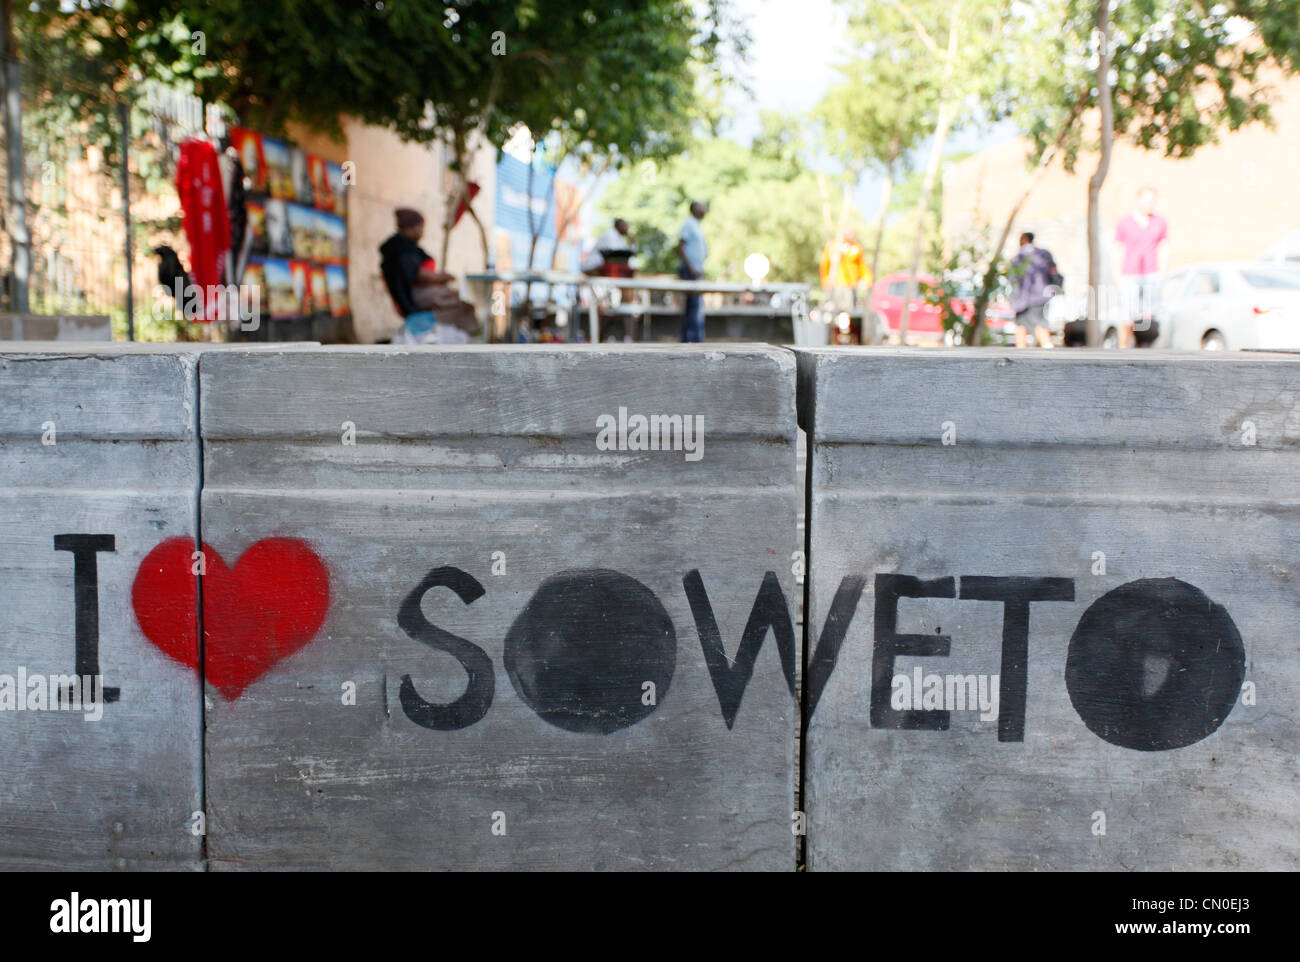 J'aime Soweto signe graffiti sur le trottoir de Soweto, Johannesburg, Afrique du Sud. Banque D'Images